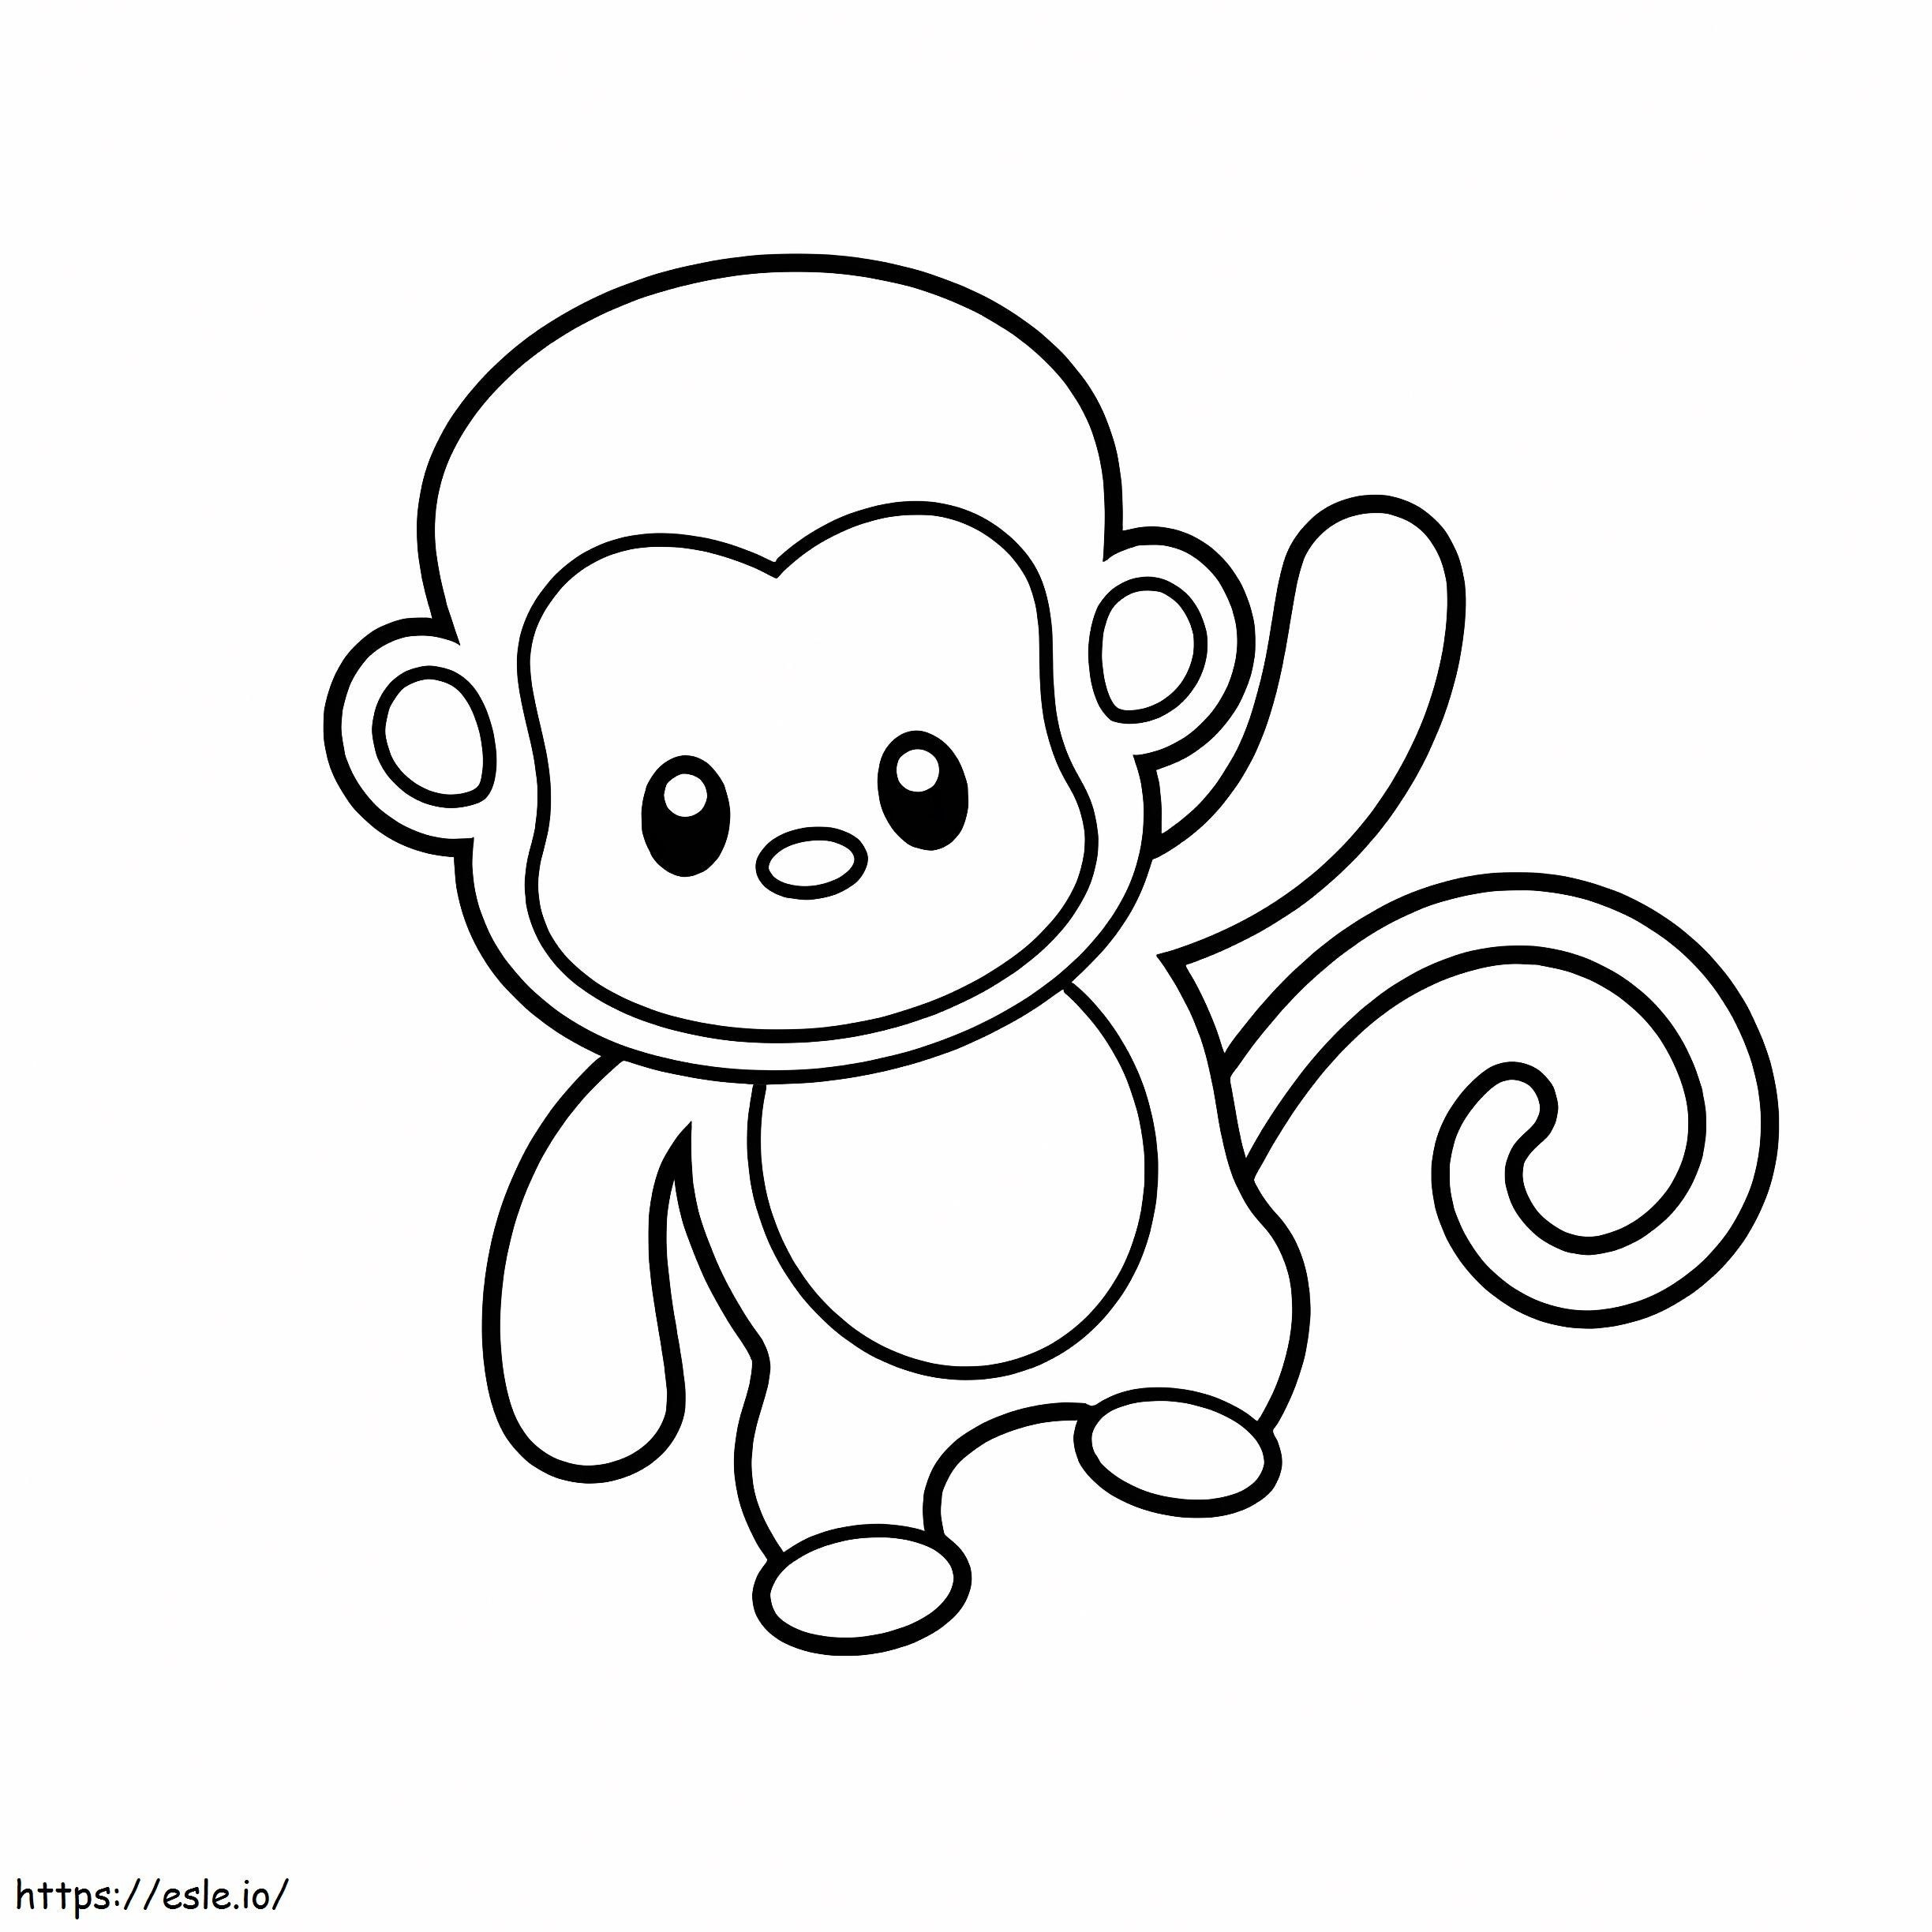 Süßer Affe ausmalbilder